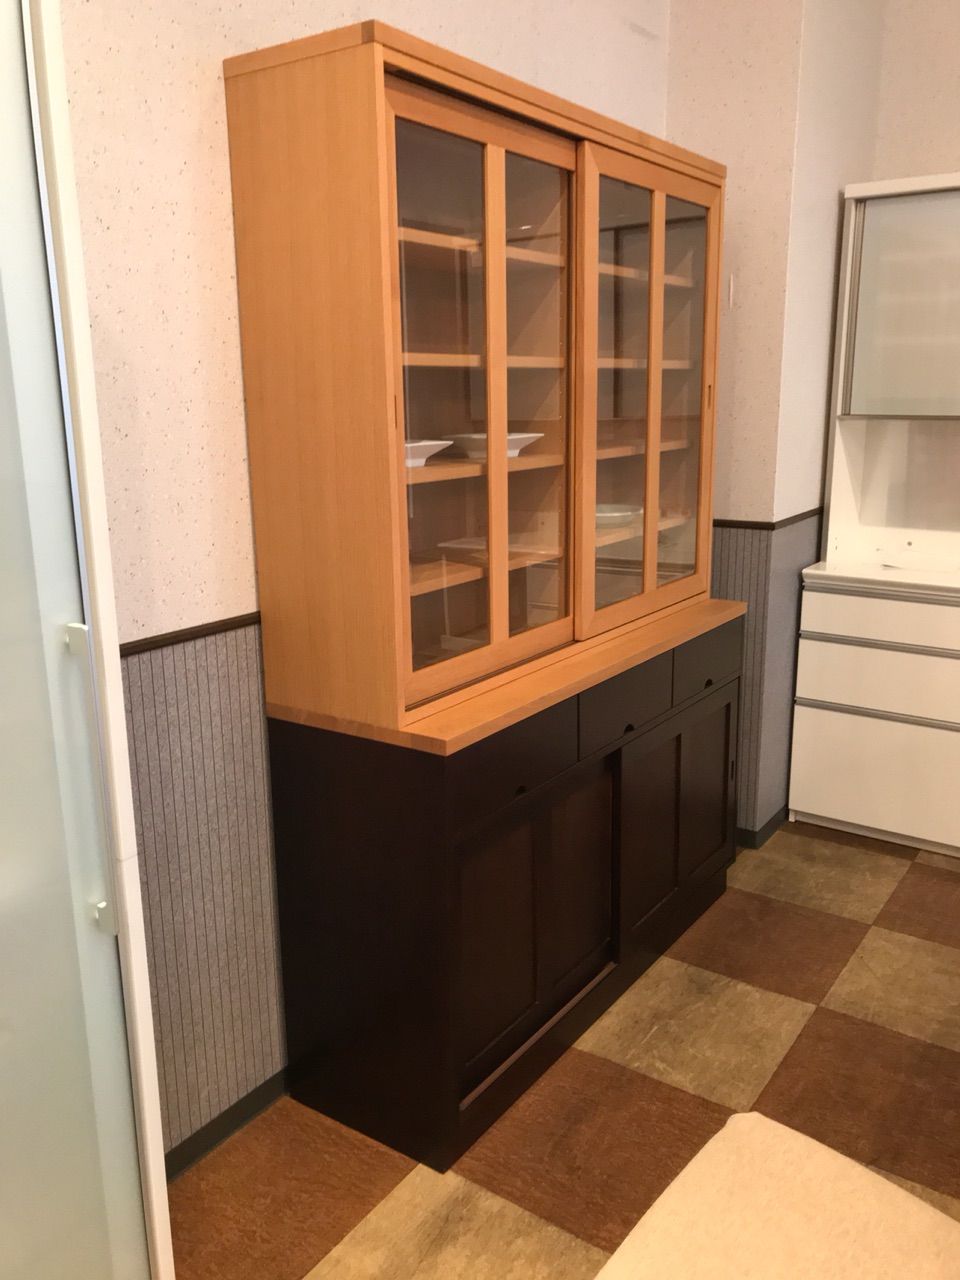 和風モダンな食器棚 LDSカップボード 柏木工 住賓館(じゅうひんかん)ブログ